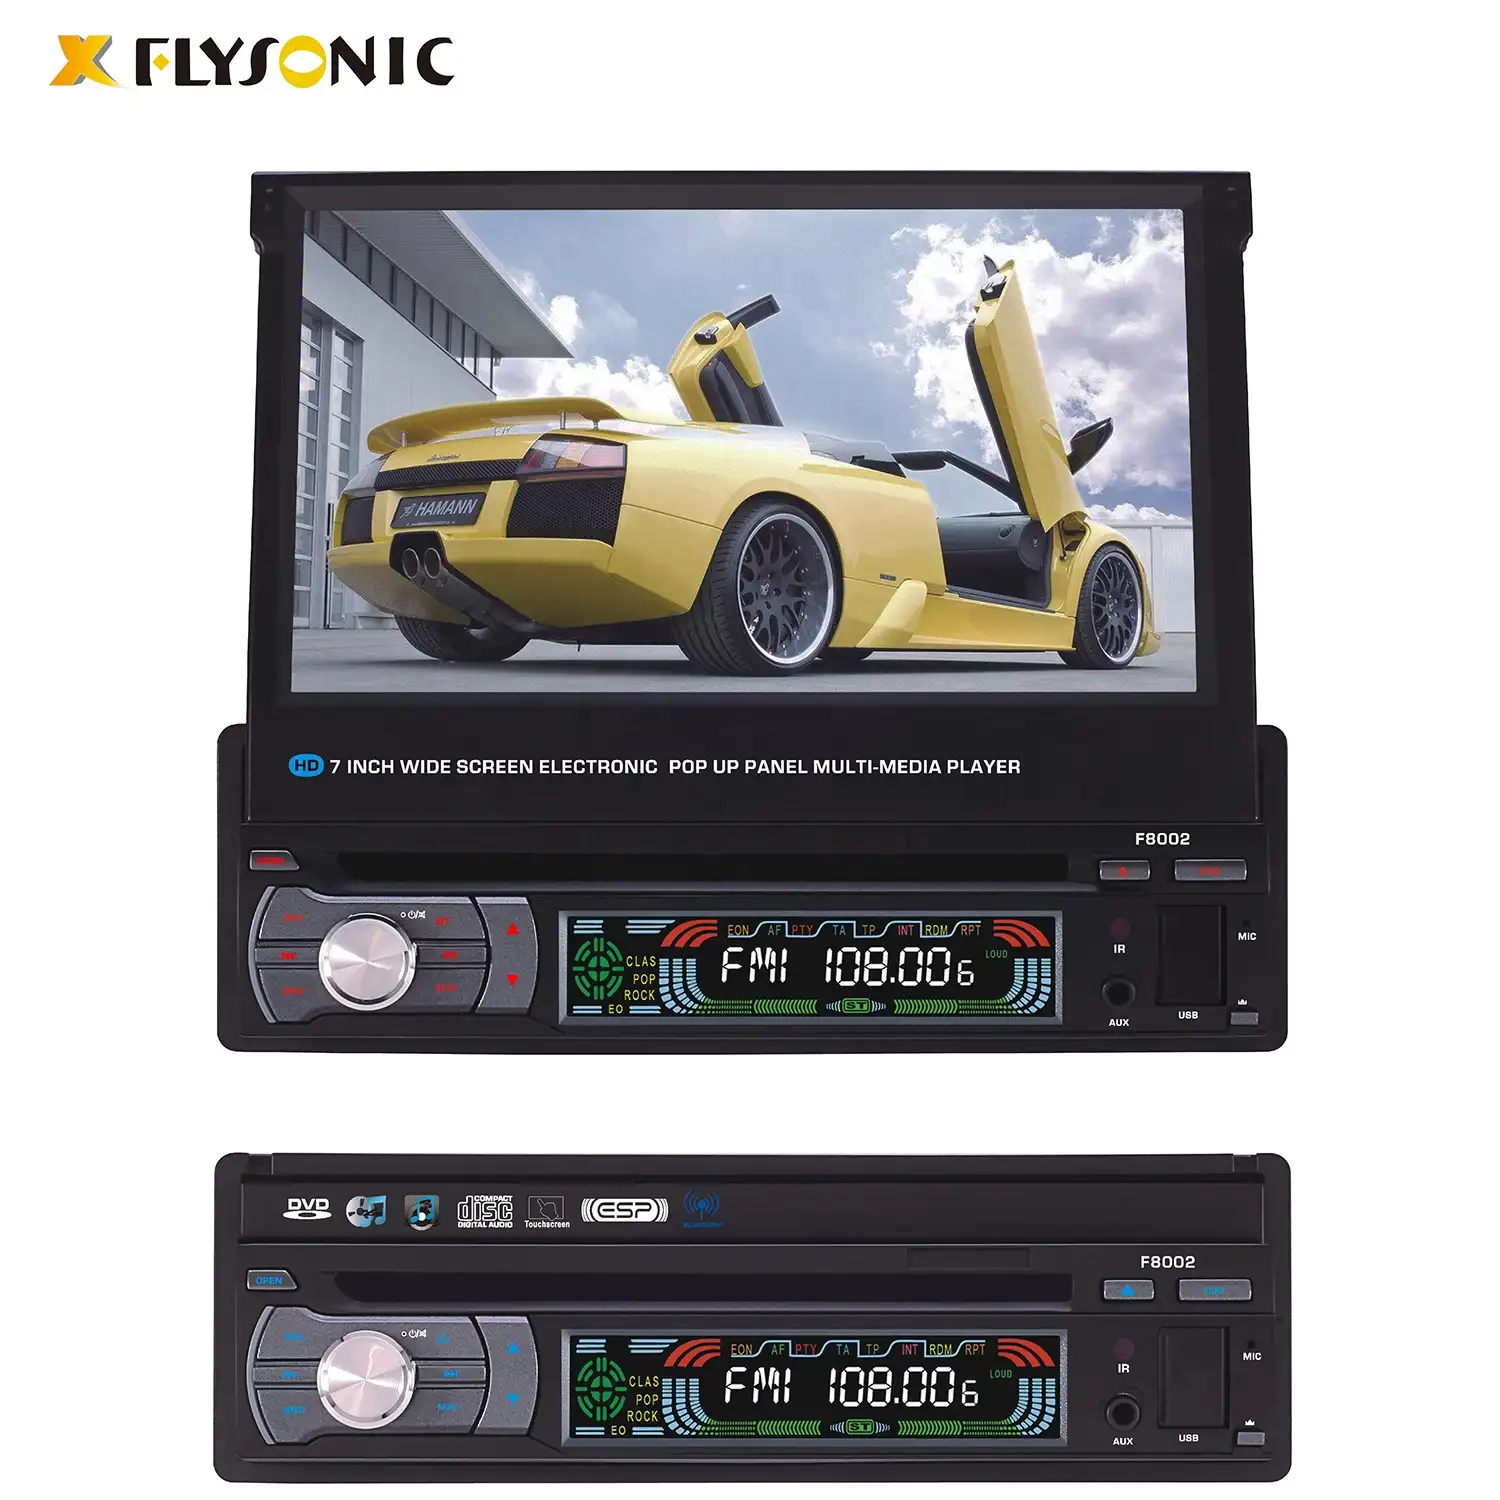 (FY8002) reproductor de DVD para coche One din con pantalla táctil TFT retráctil de 7"